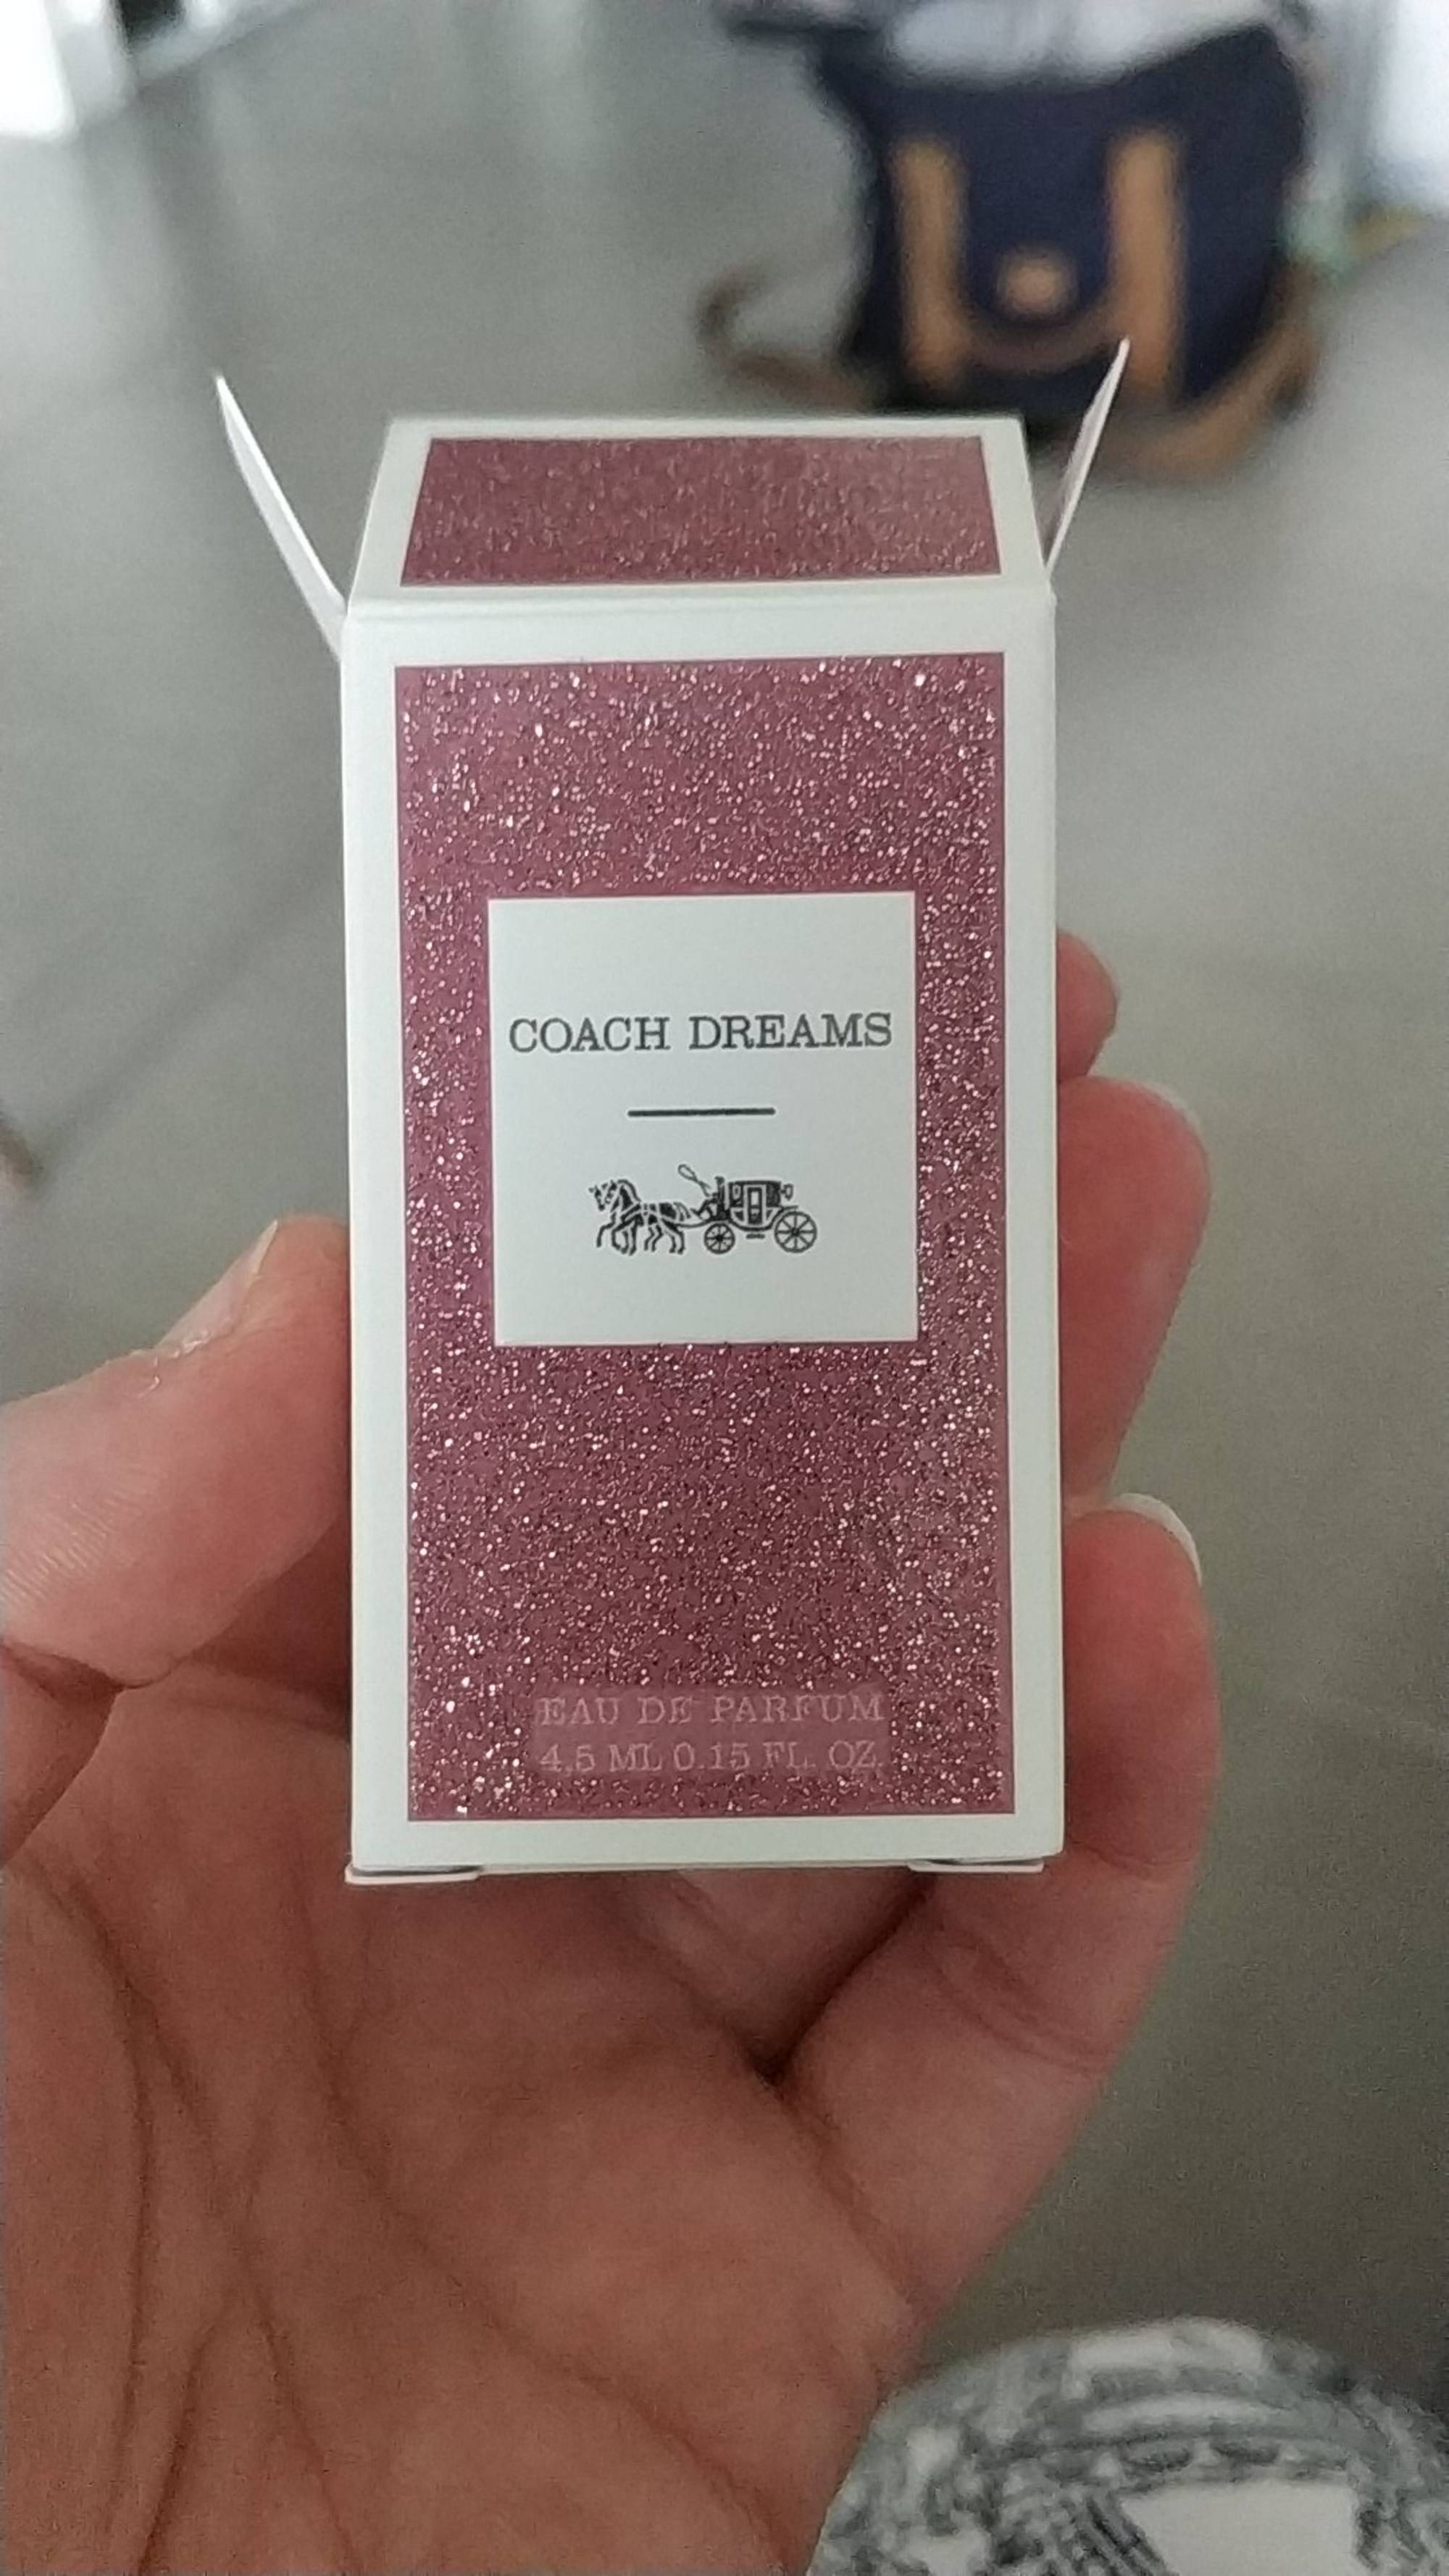 COACH - Coach dreams - Eau de parfum